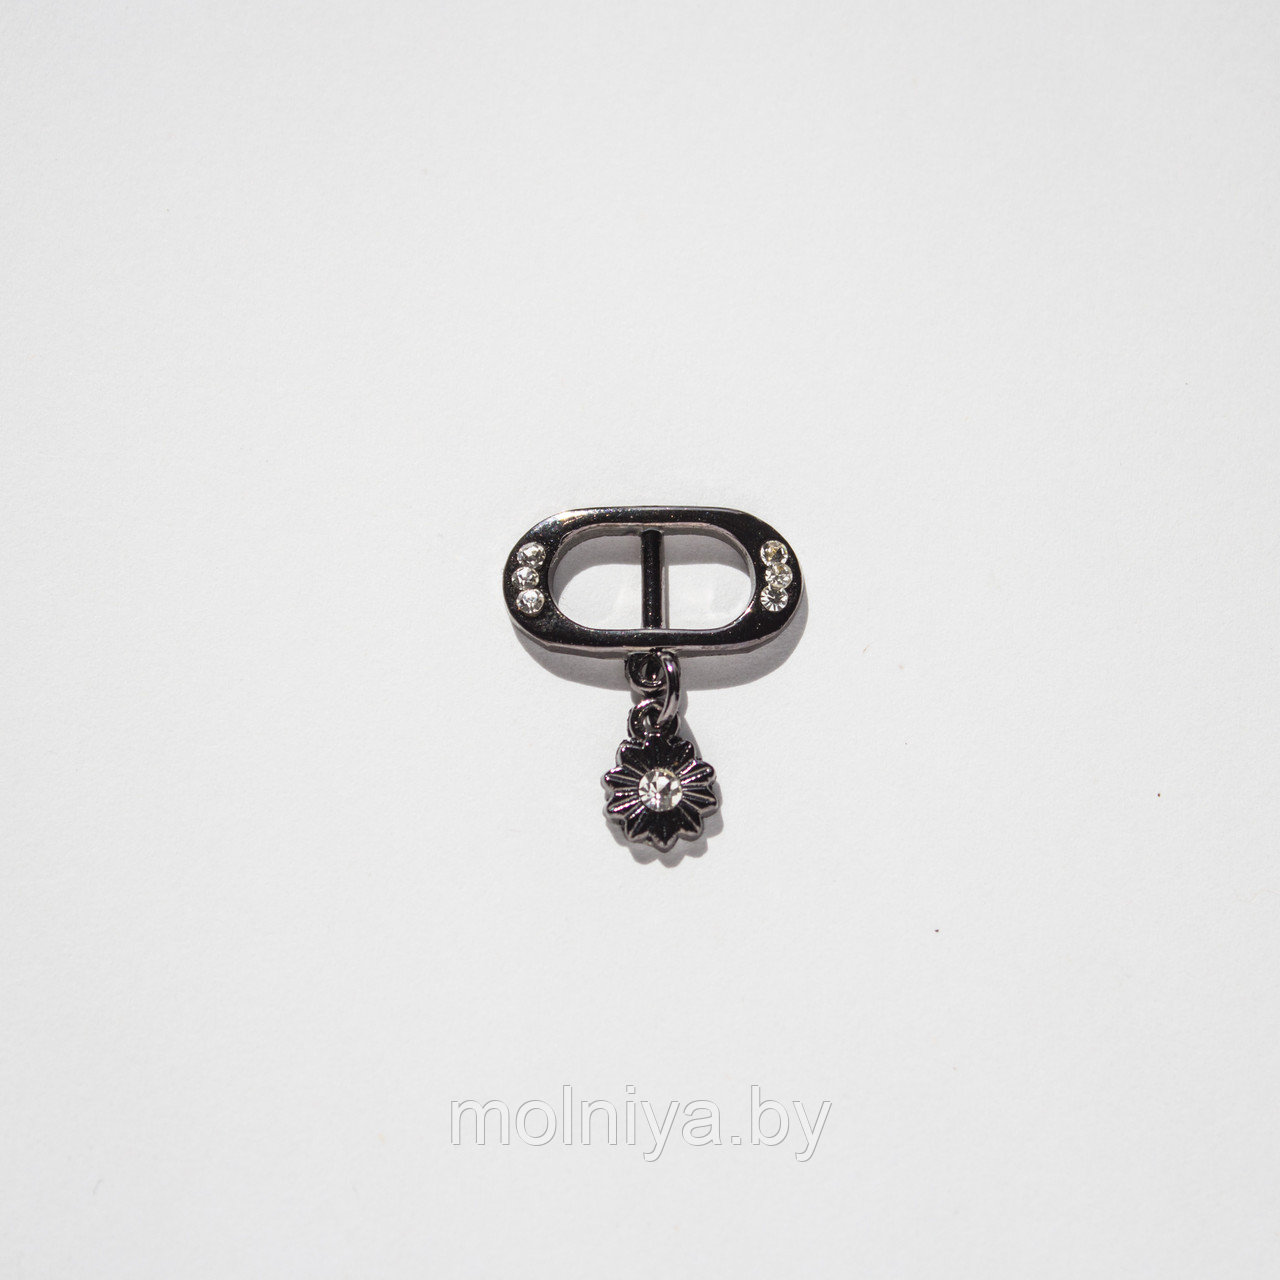 Пряжка металлическая декоративная 10 мм (черный никель)